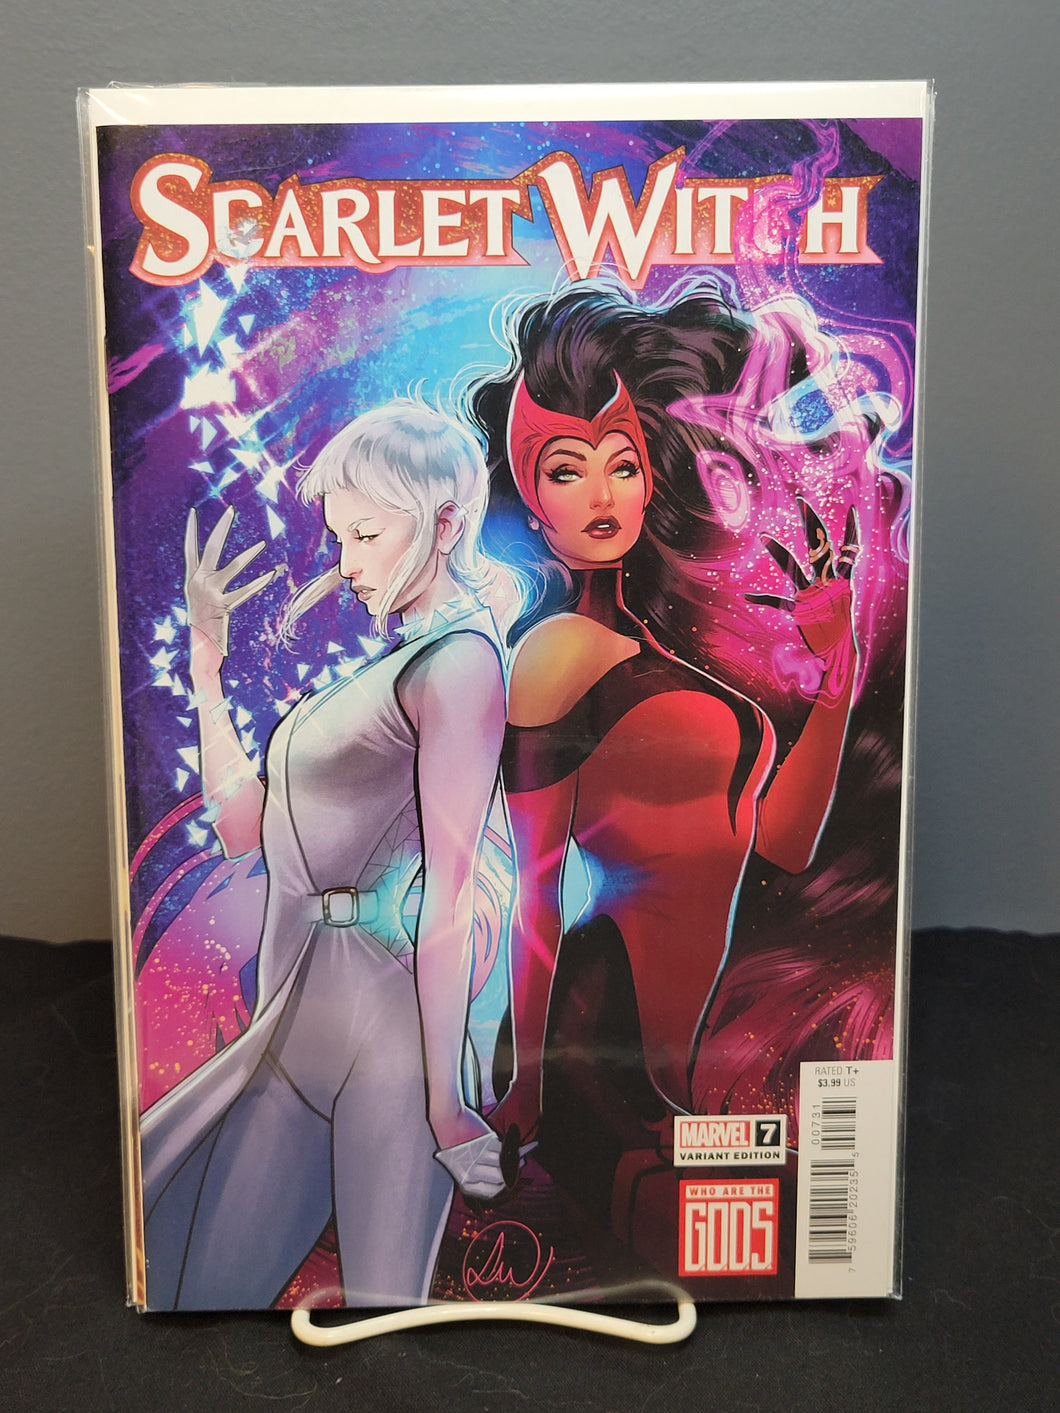 Scarlet Witch #7 Gods Variant